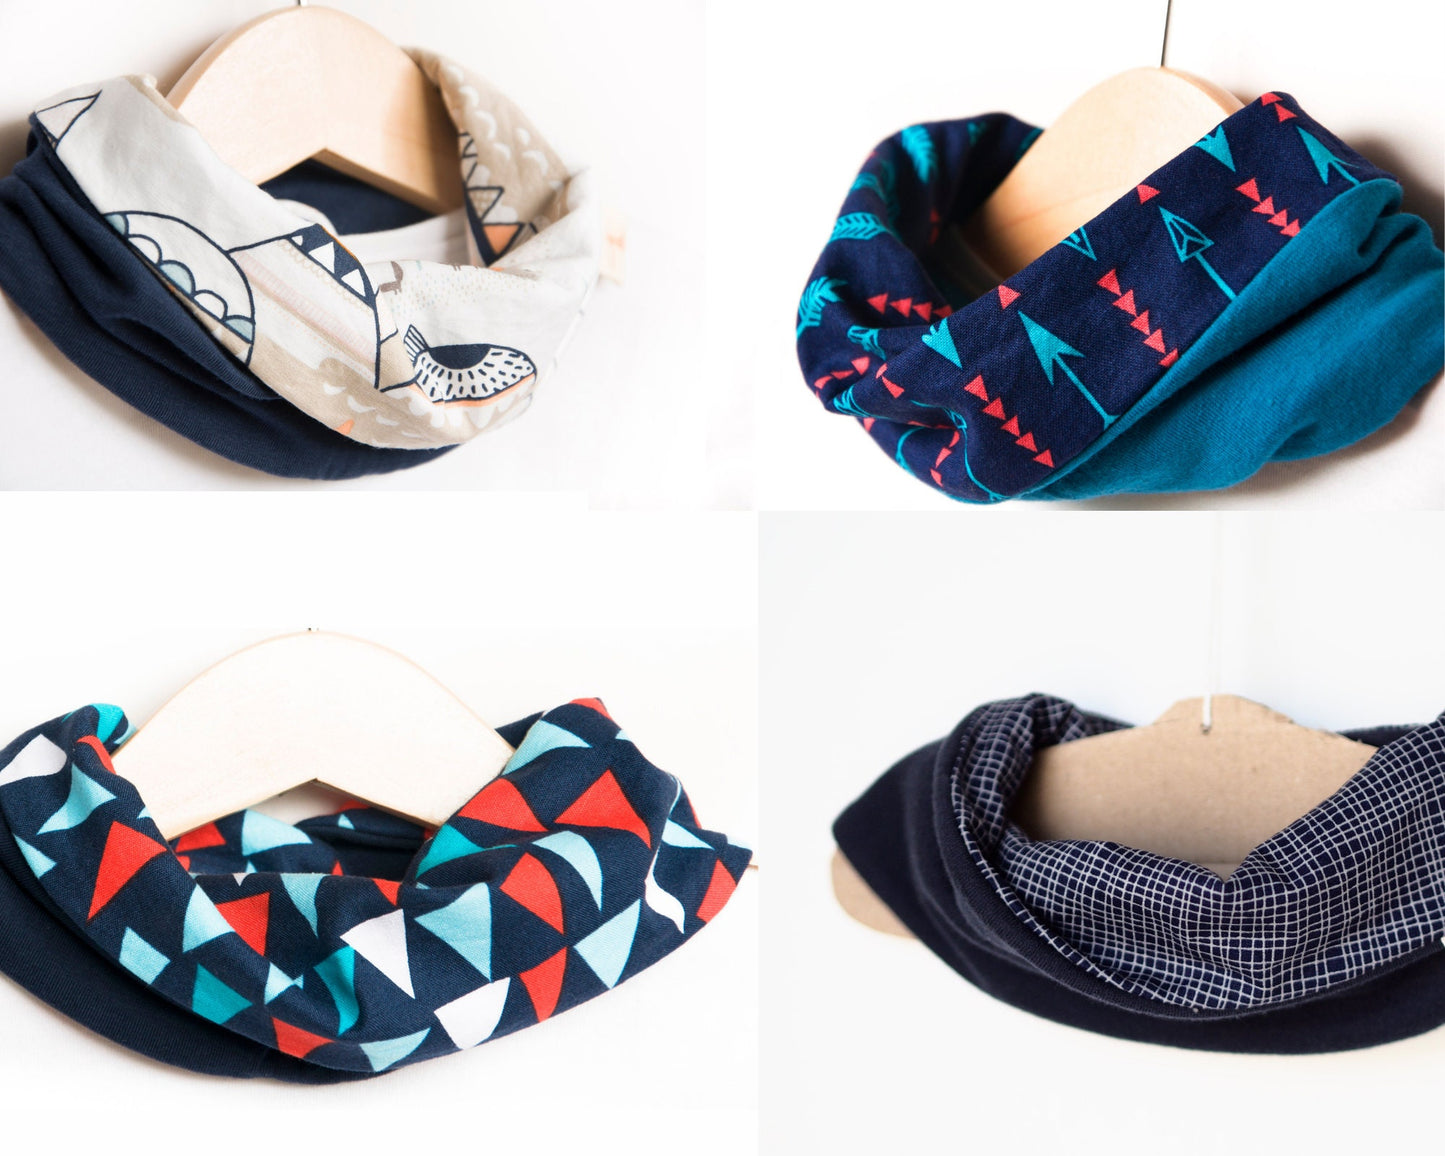 LOOP Baby scarf bib - sewing pattern